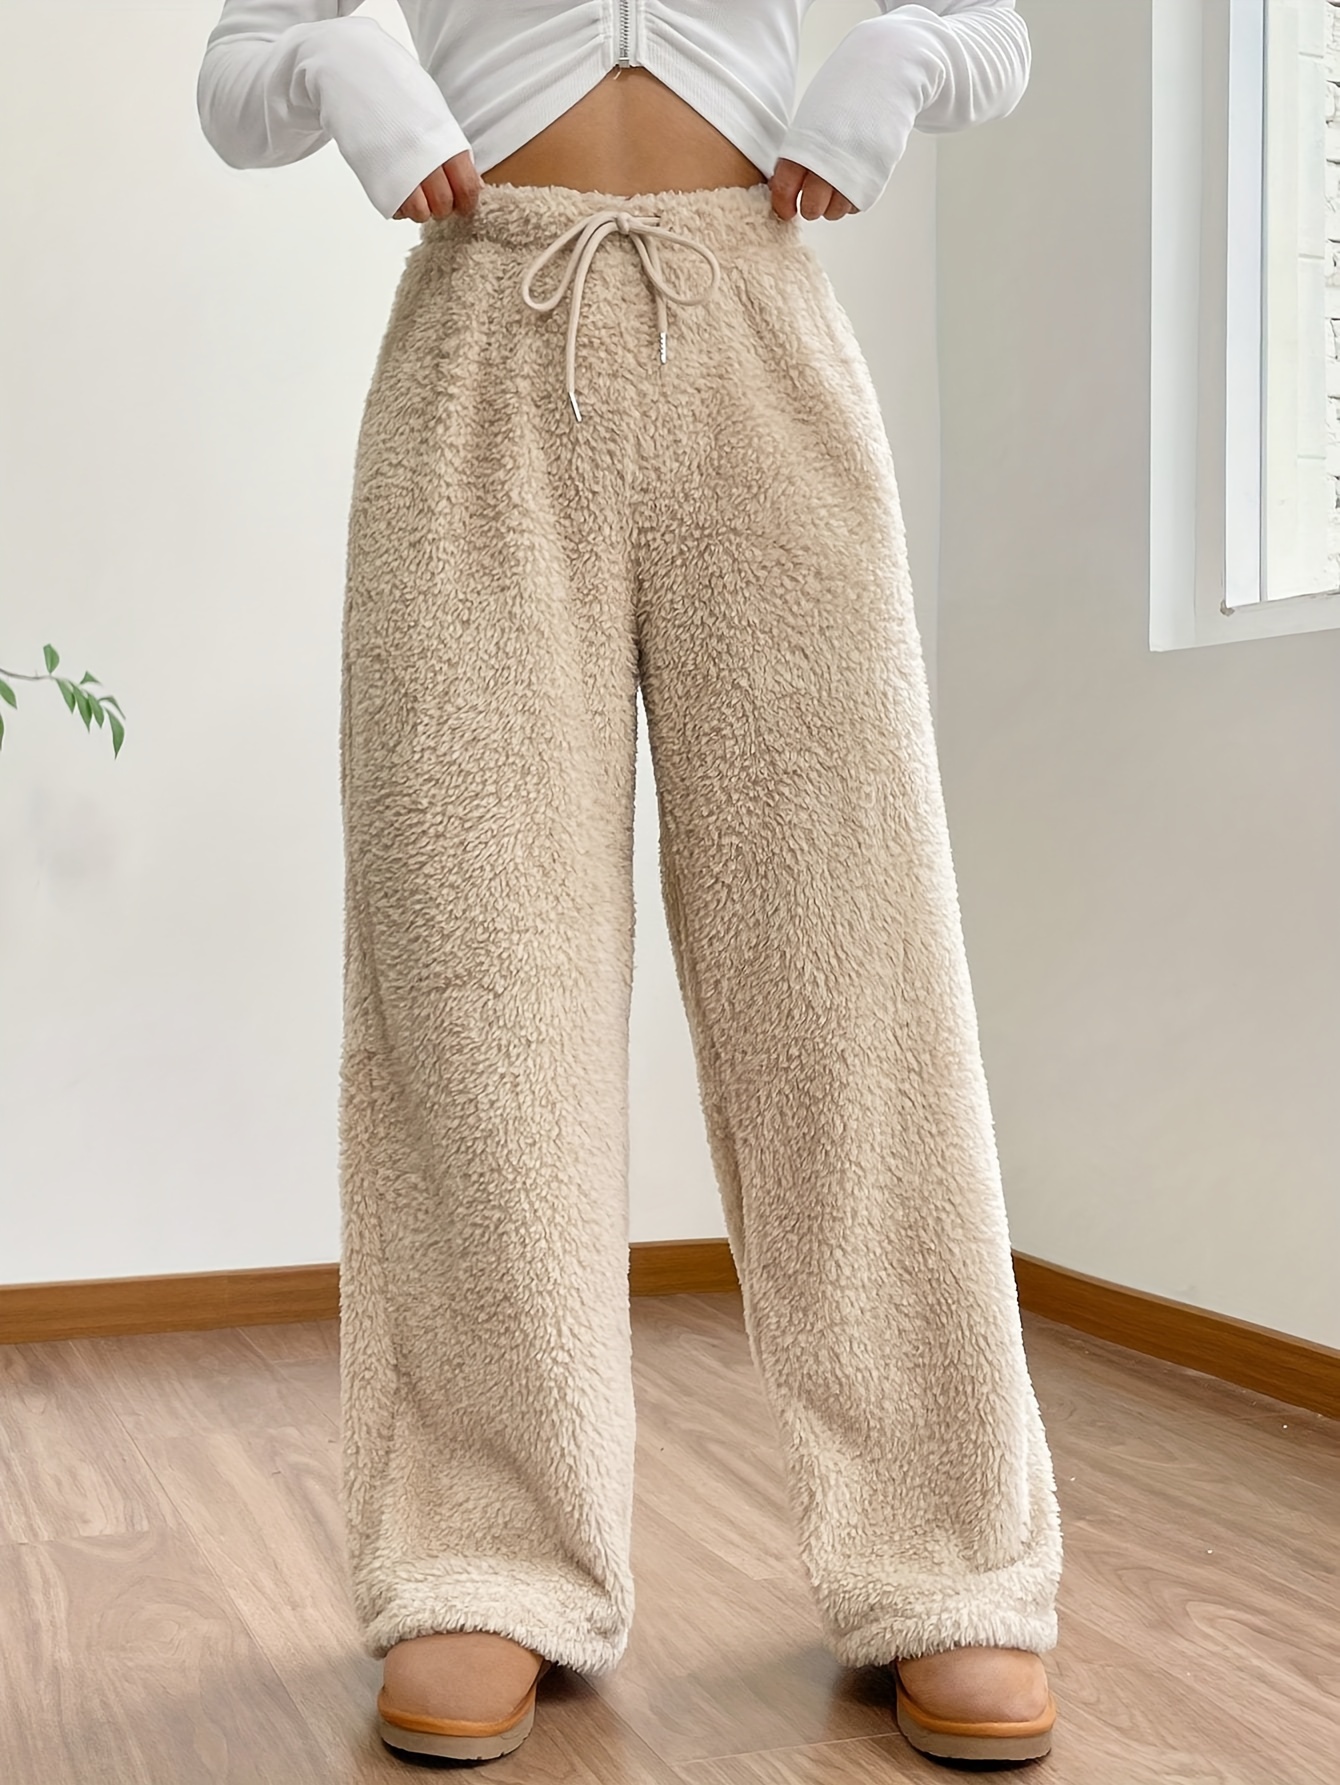 Christmas Elk Print Lounge Pants, Warm & Cute Lace Up Fuzzy Pants, Womens  Loungewear & Sleepwear